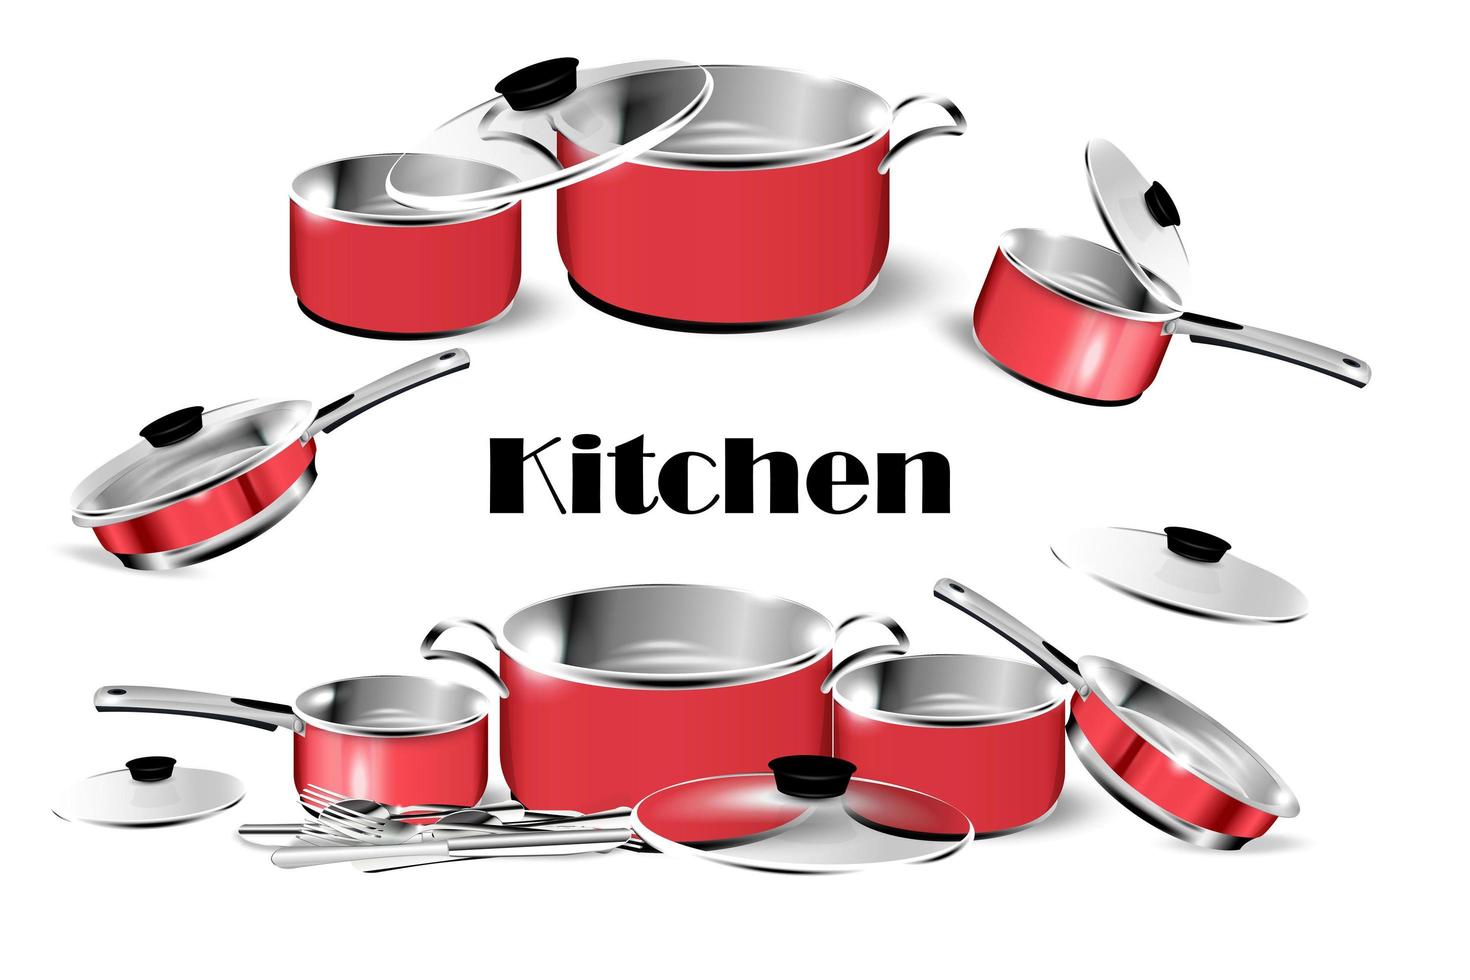 realistische rote Gerichte. Stahlkochtöpfe mit Umhang, Metalltopf und Pfanne, isoliertes Kochgeschirr. Vektorbild 3d Chrom Bratpfanne und Küchenutensilien vektor